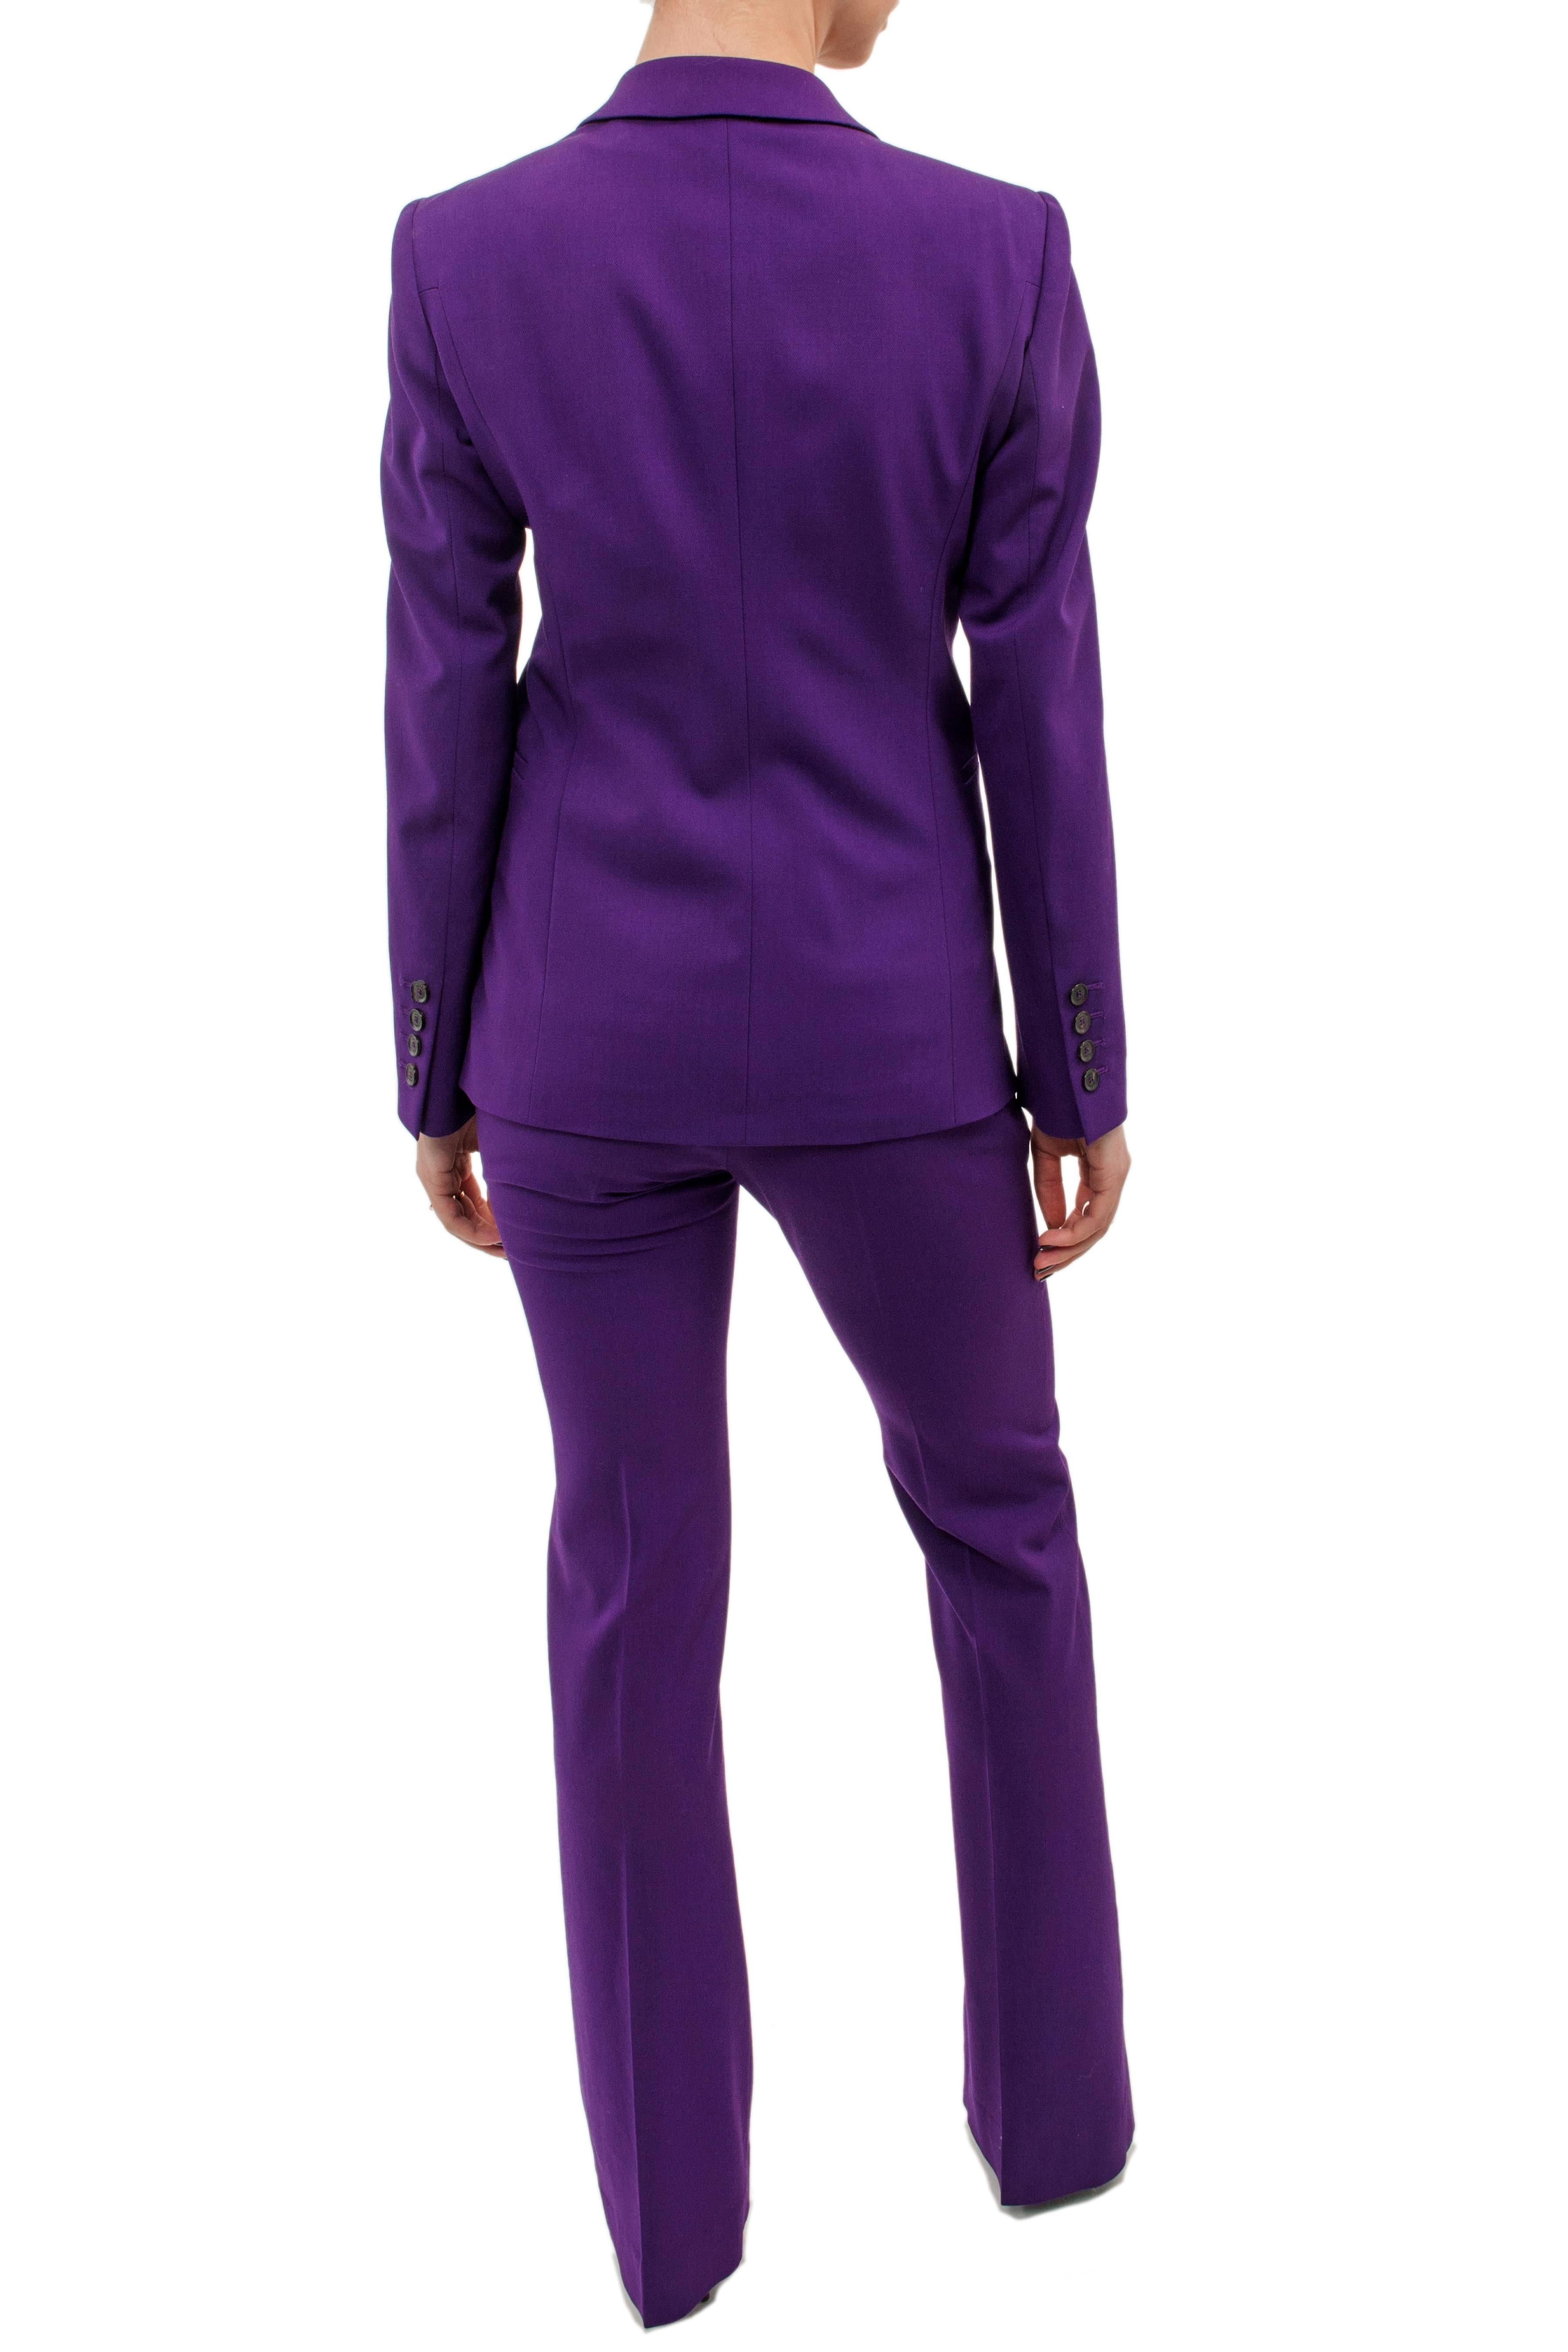 gucci purple suit